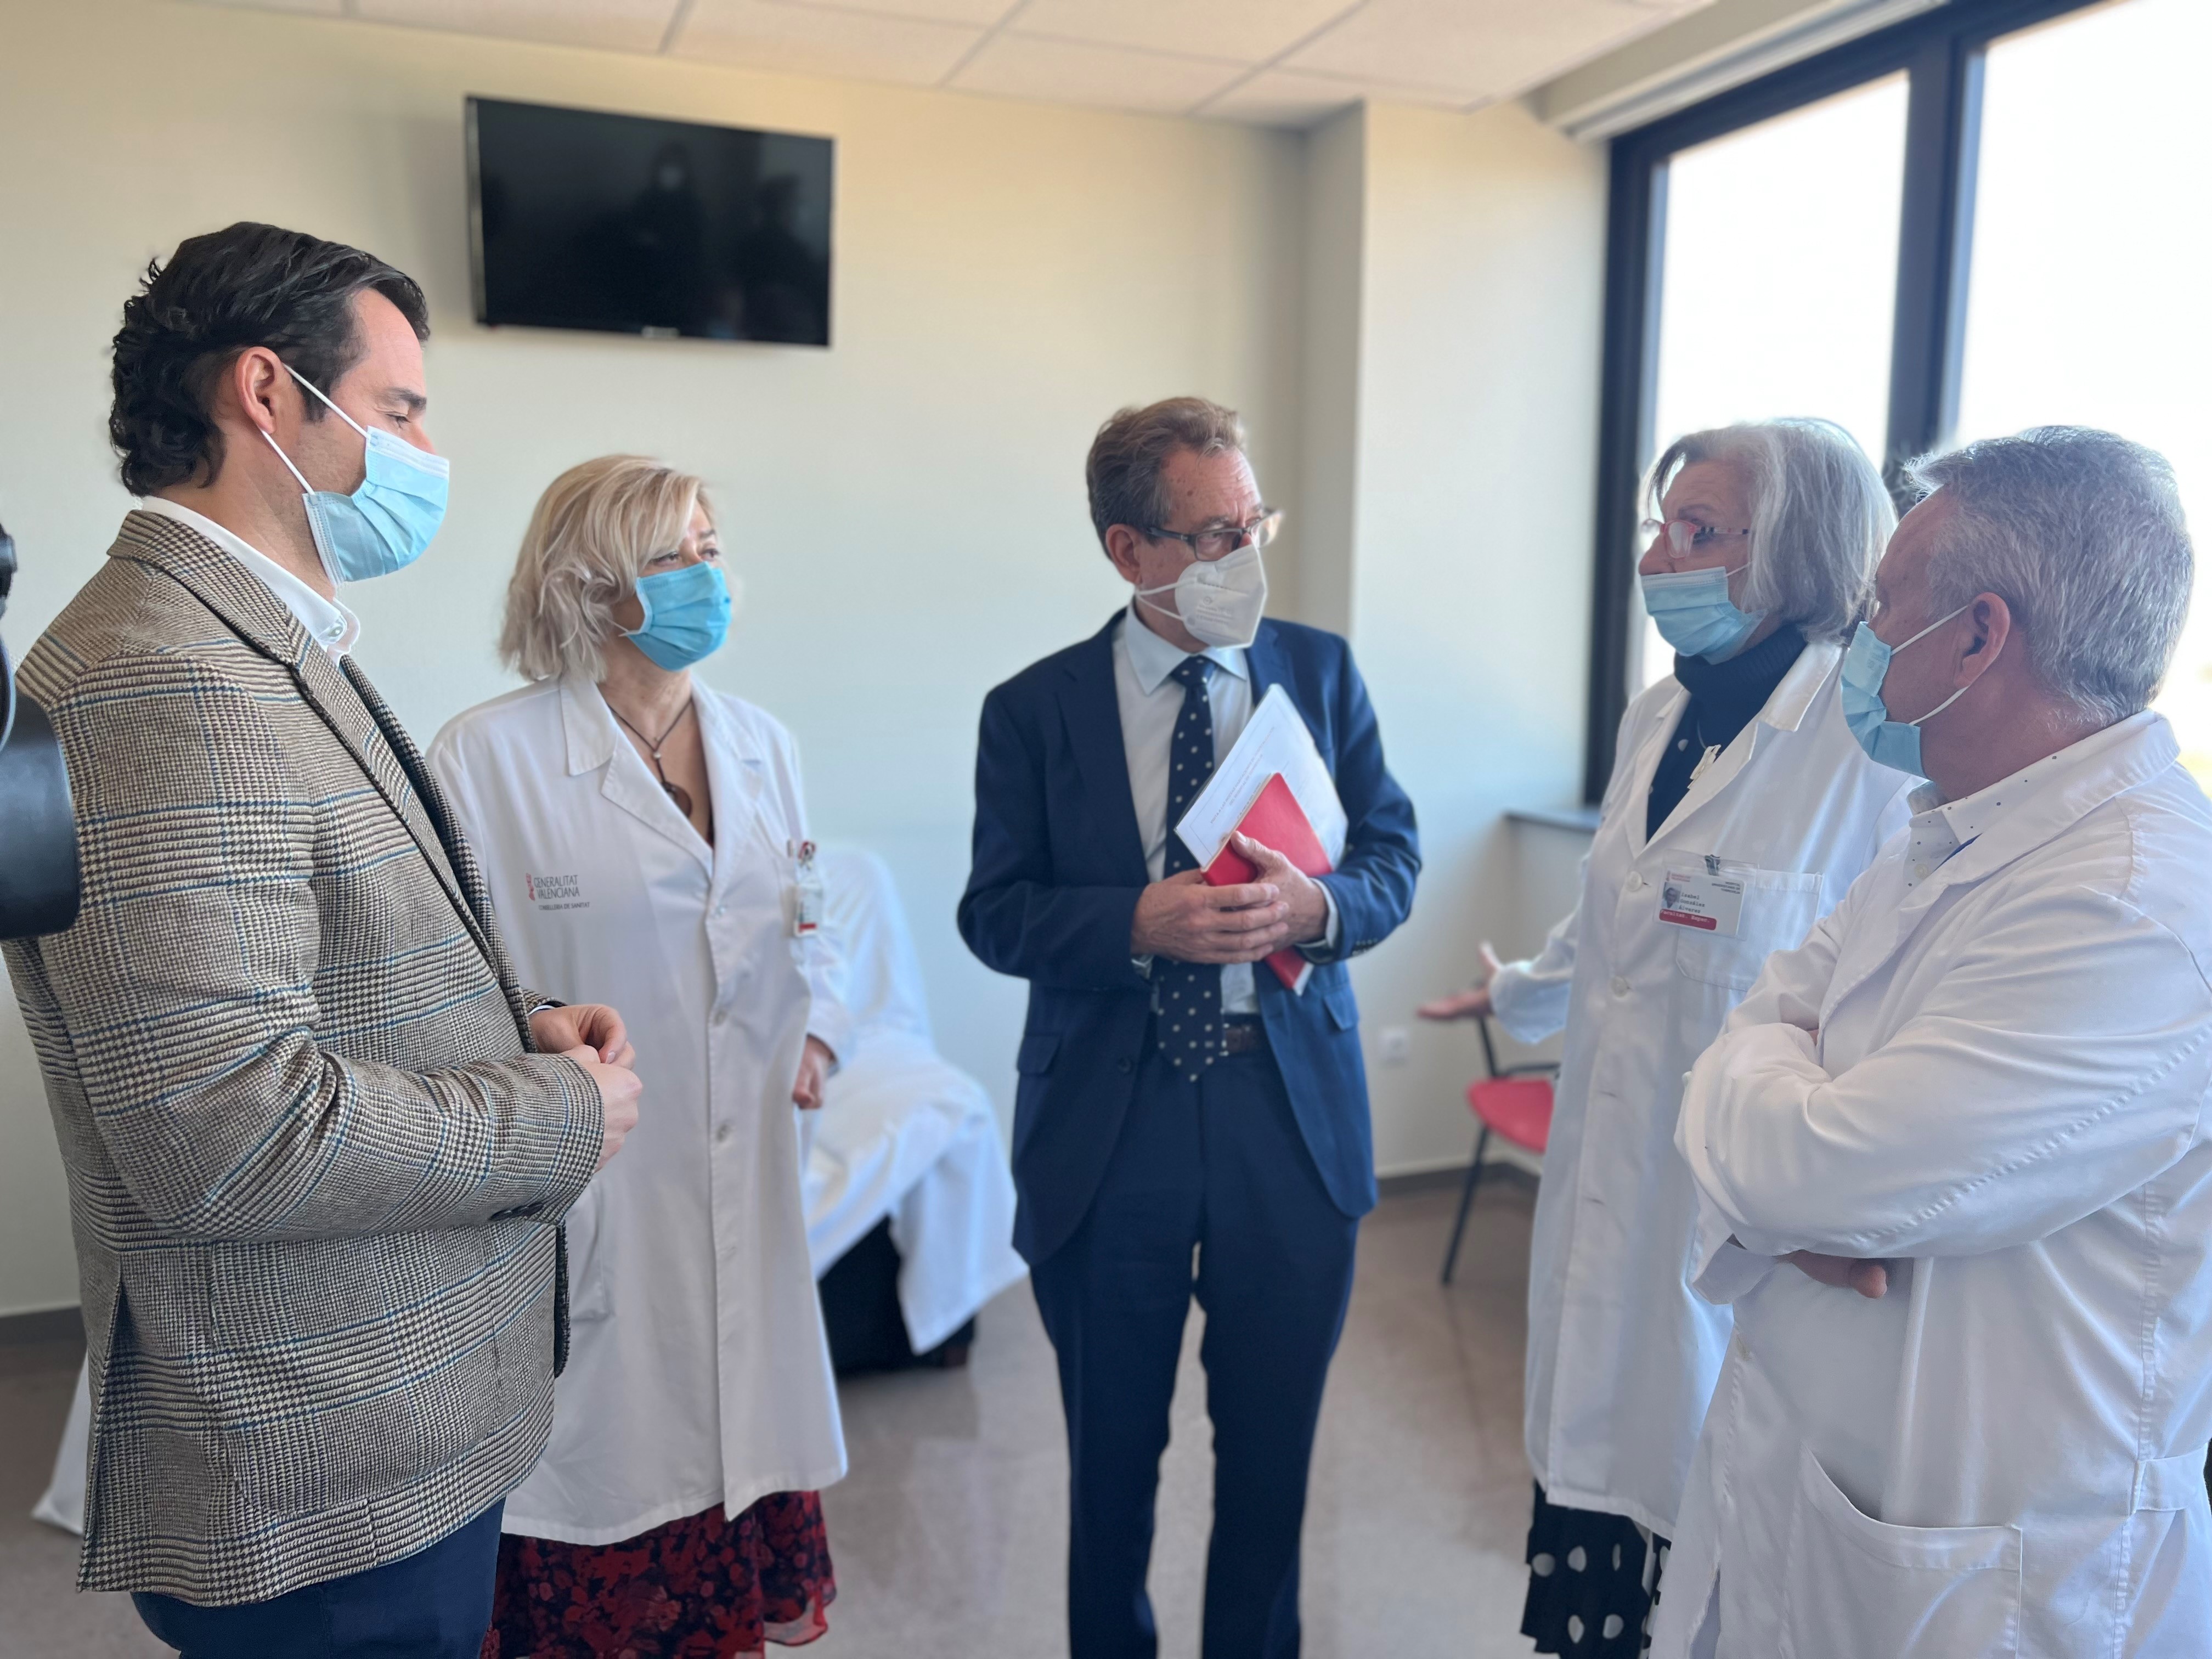 El hospital de Torrevieja cuenta con 20 nuevas habitaciones individuales para pacientes